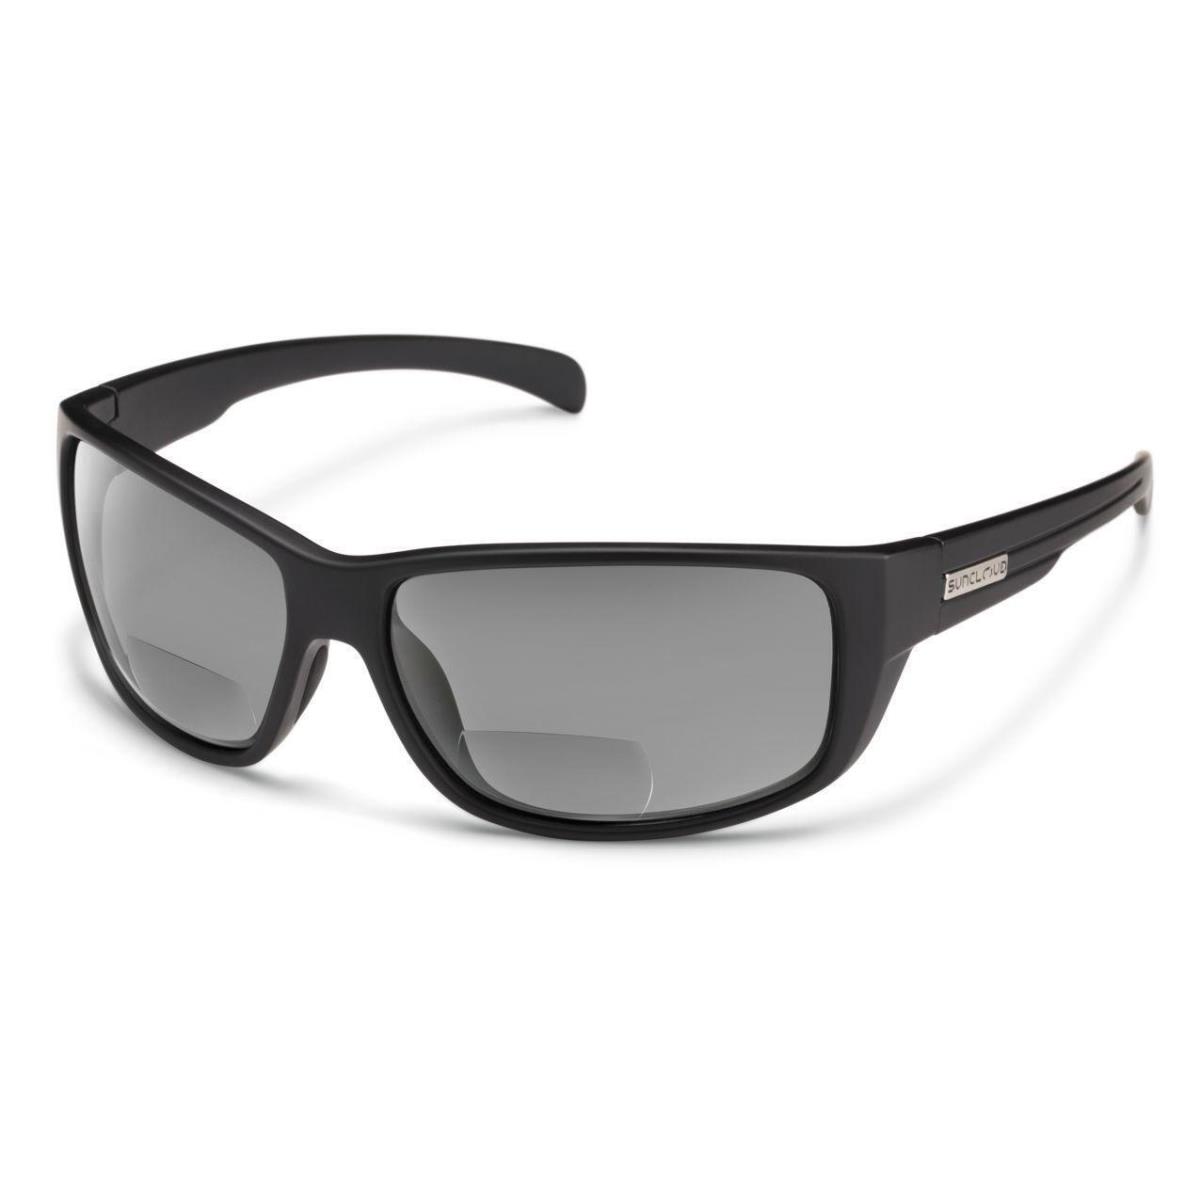 Smith Milestone Sunglasses Matte Black - Polarized Gray